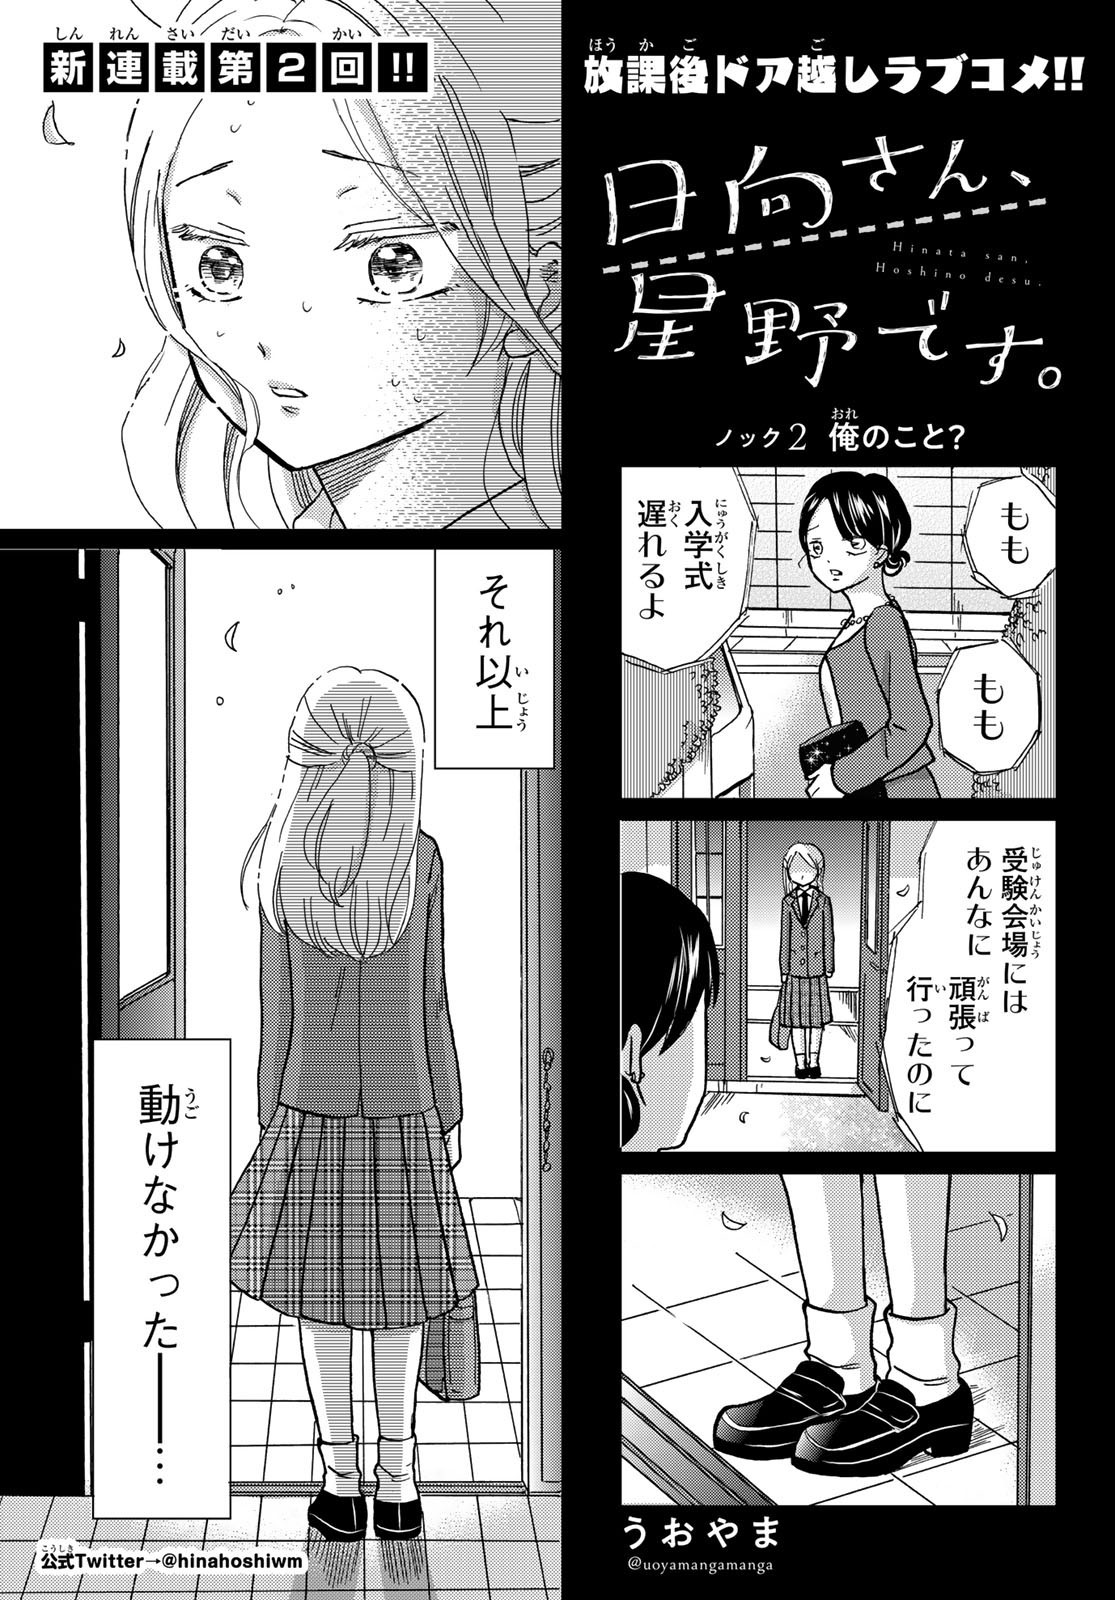 Hinata-san, Hoshino desu. - Chapter 002 - Page 1